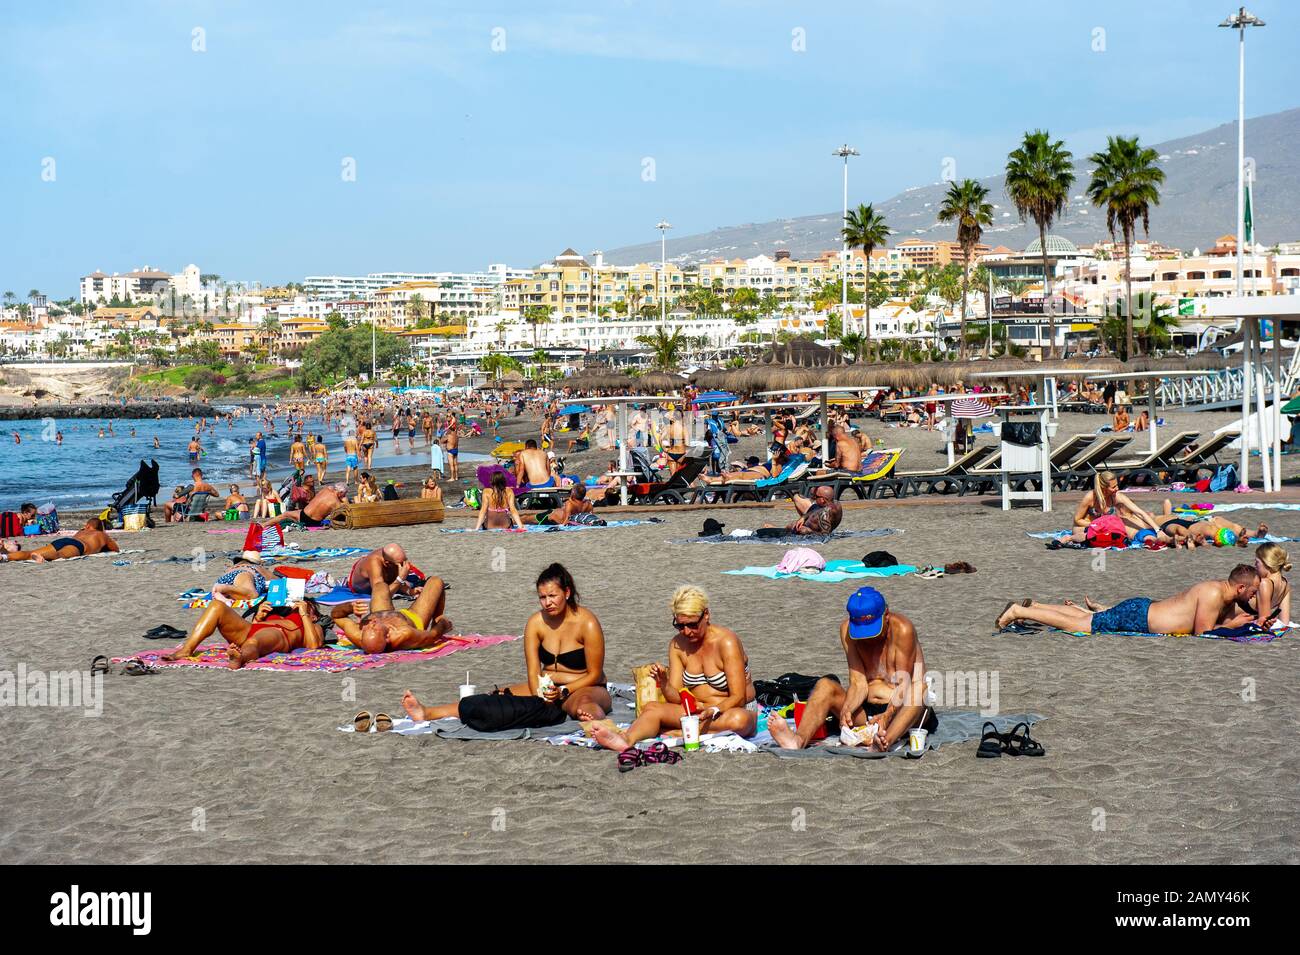 Île des Canaries TENERIFE, ESPAGNE - 26 DEC, 2019: Les touristes ment et se détendant sur la plage appelée playa de torviscas. Banque D'Images